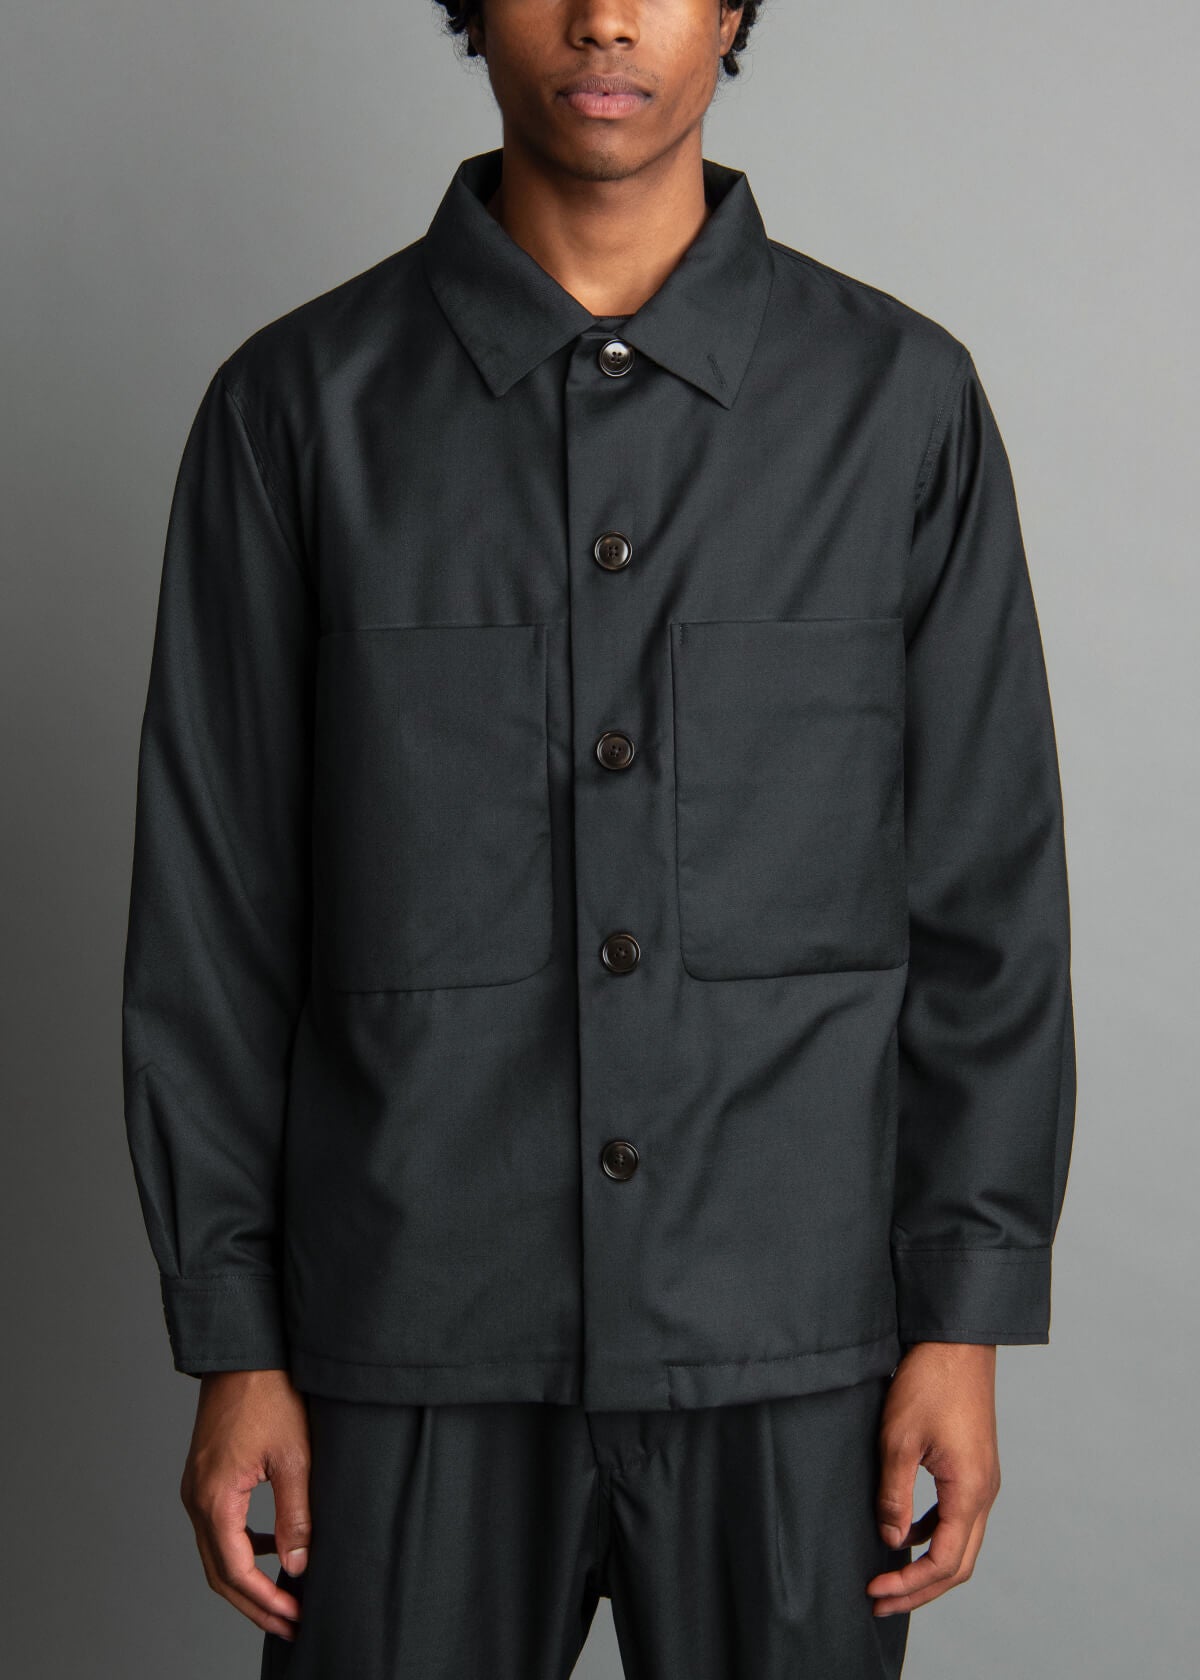 black wool jacket for men